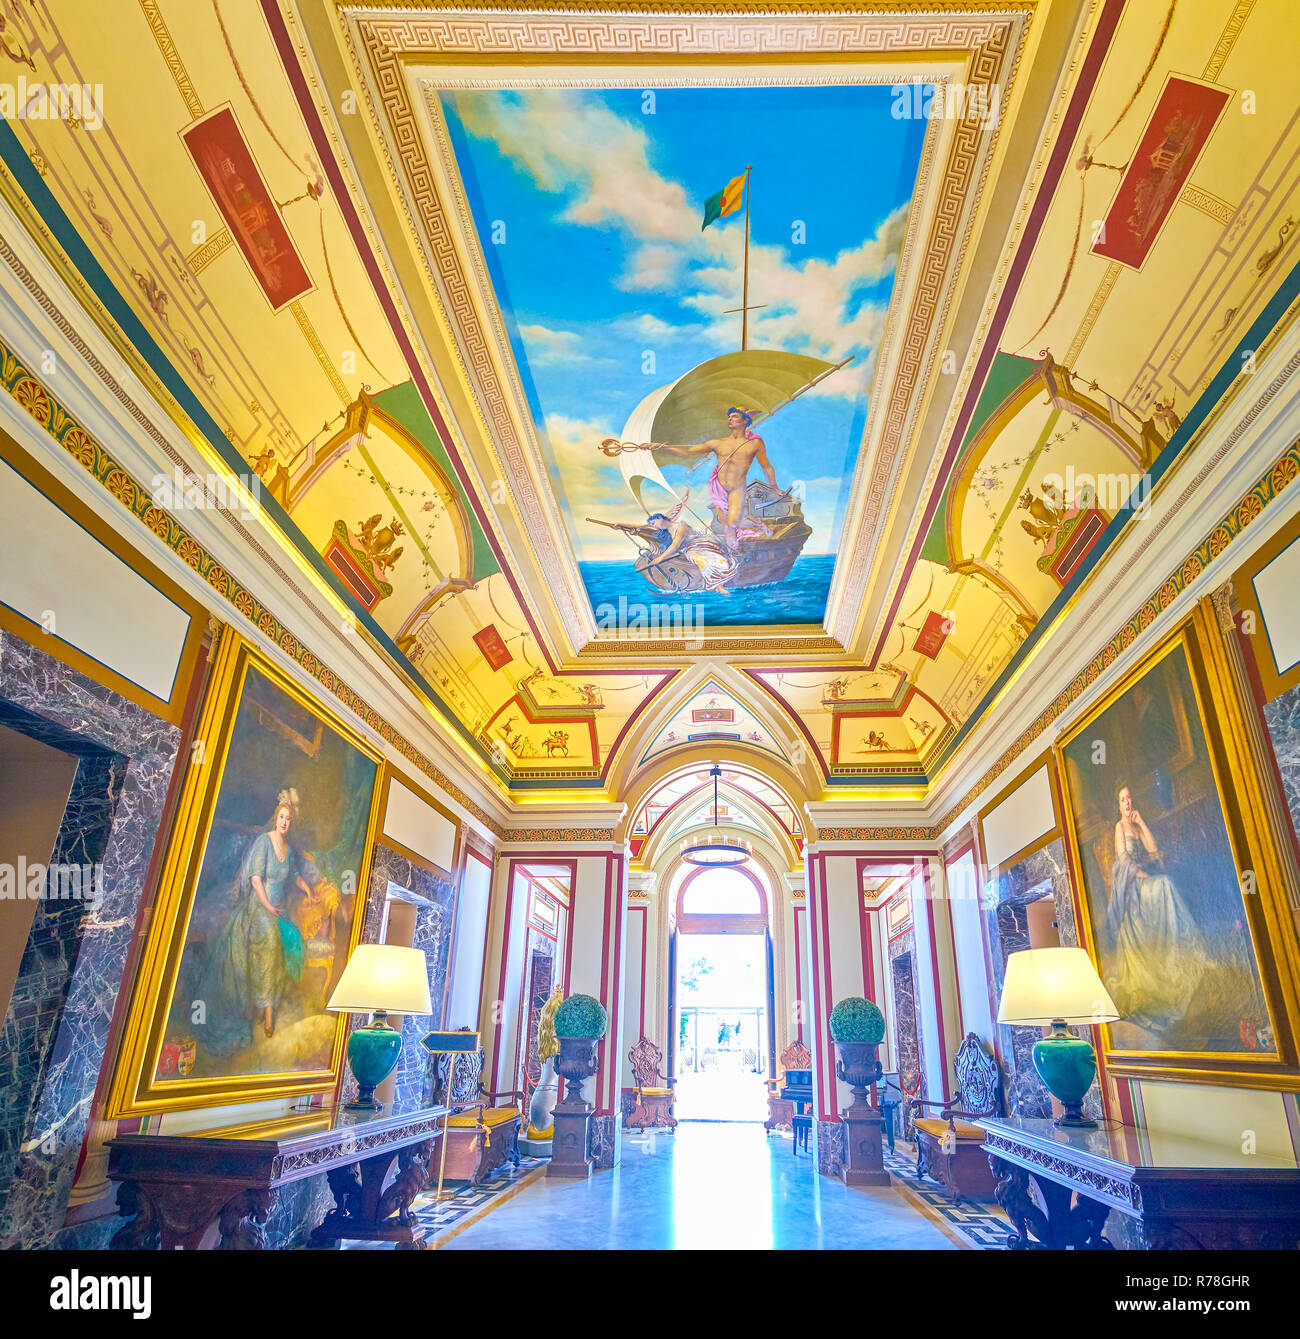 NAXXAR, MALTA - 14. Juni 2018: Die schöne Innenausstattung der Eingangshalle des Palazzo Parisio mit riesigen Gemälden an den Wänden und Fresken an der Decke, Stockfoto